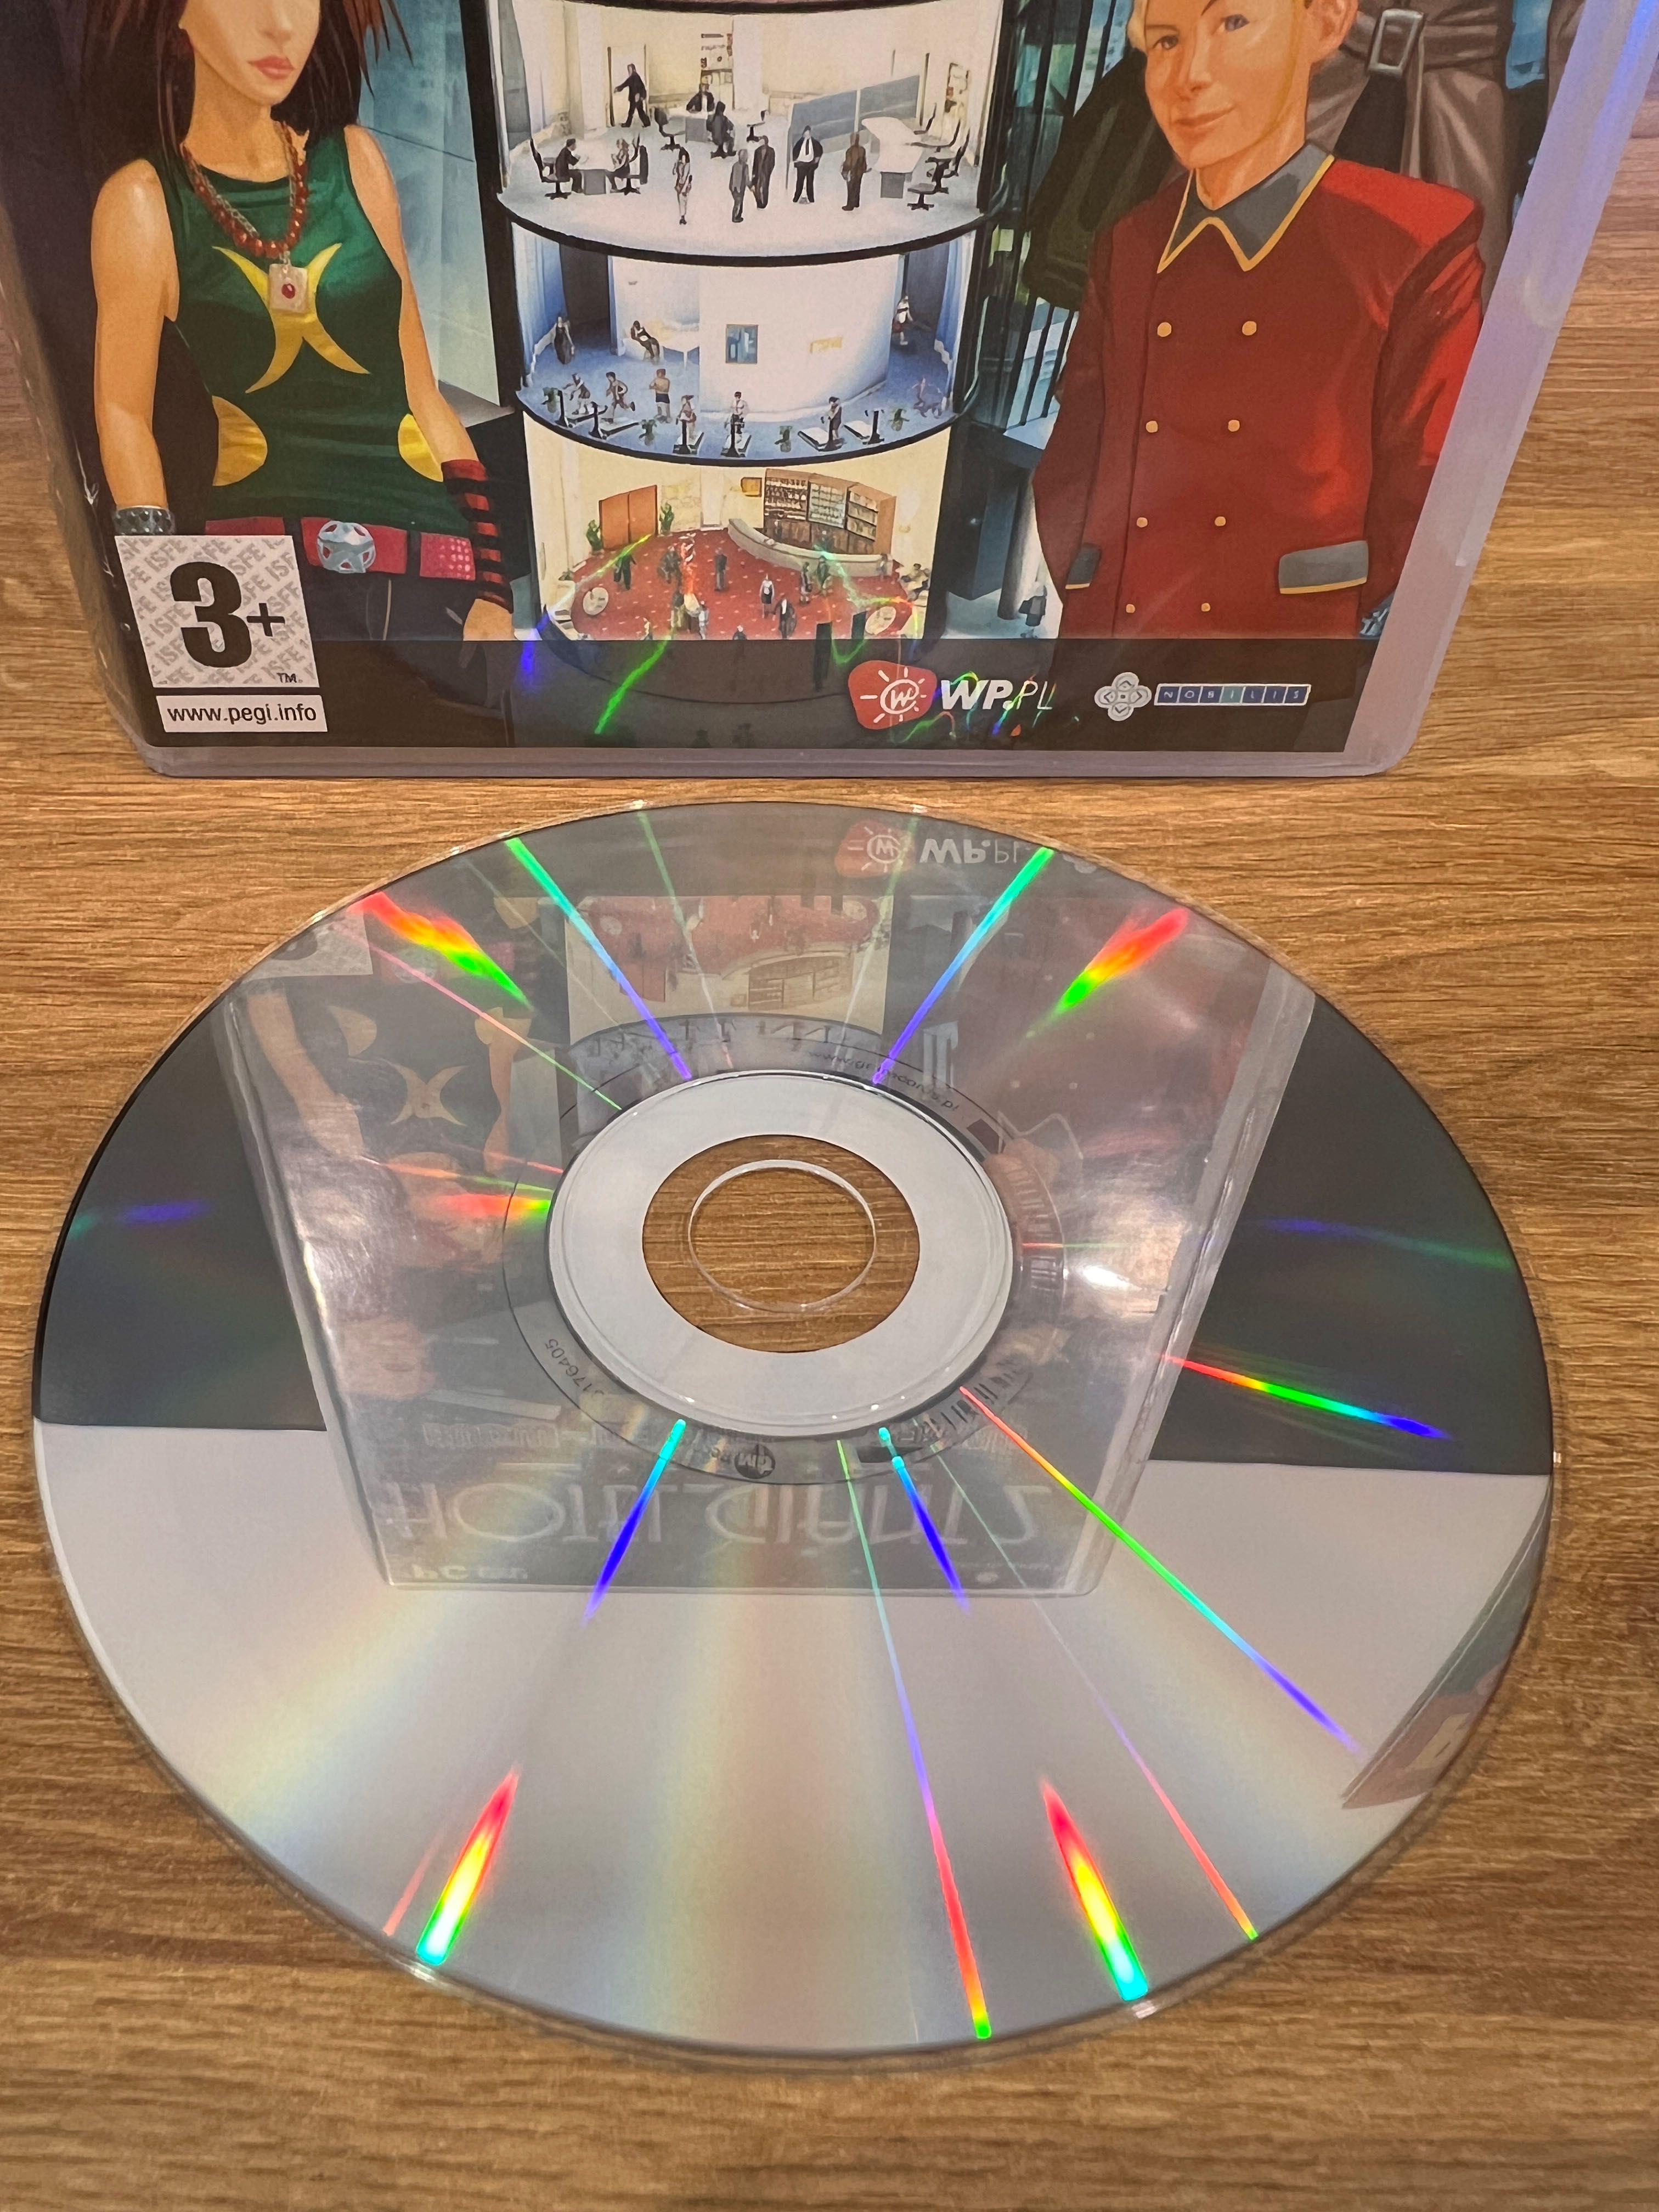 Hotel Giant 2 gra (PC PL 2008) DVD BOX kompletne premierowe wydanie